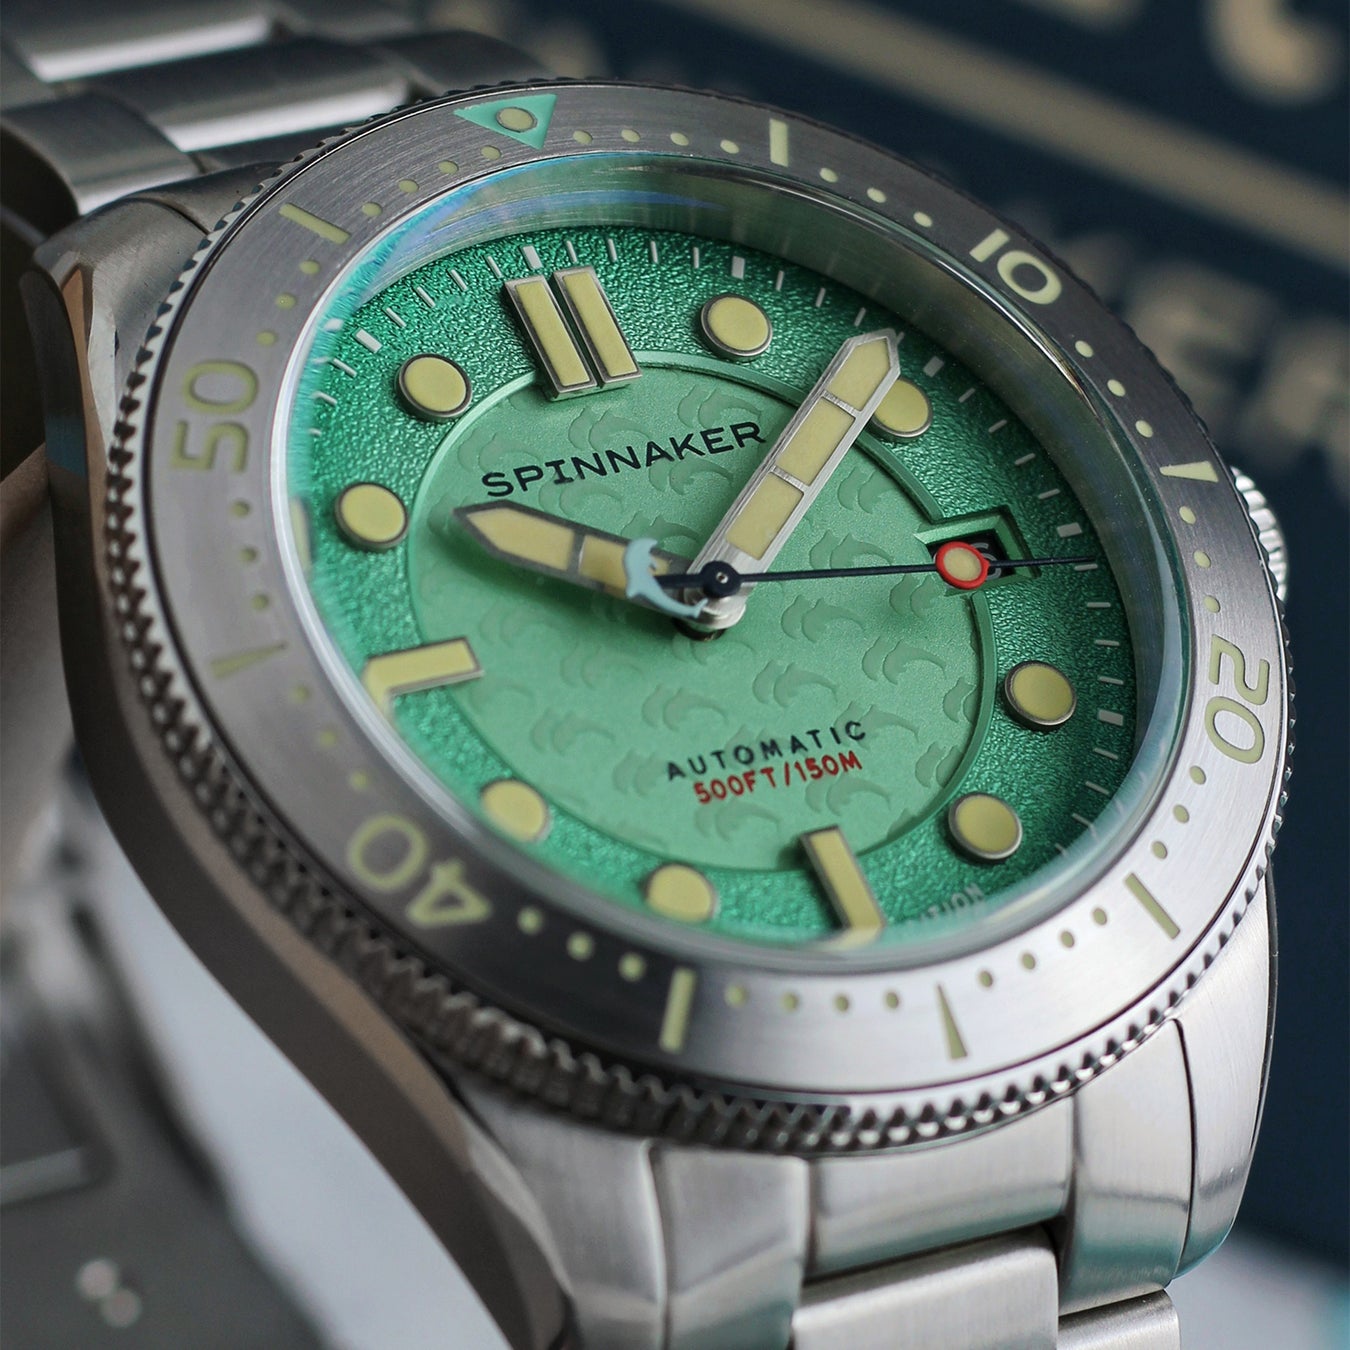 イタリア発の腕時計「スピニカー」、『ドルフィン・プロジェクト』とのコラボレーション「クロフトミッドサイ...